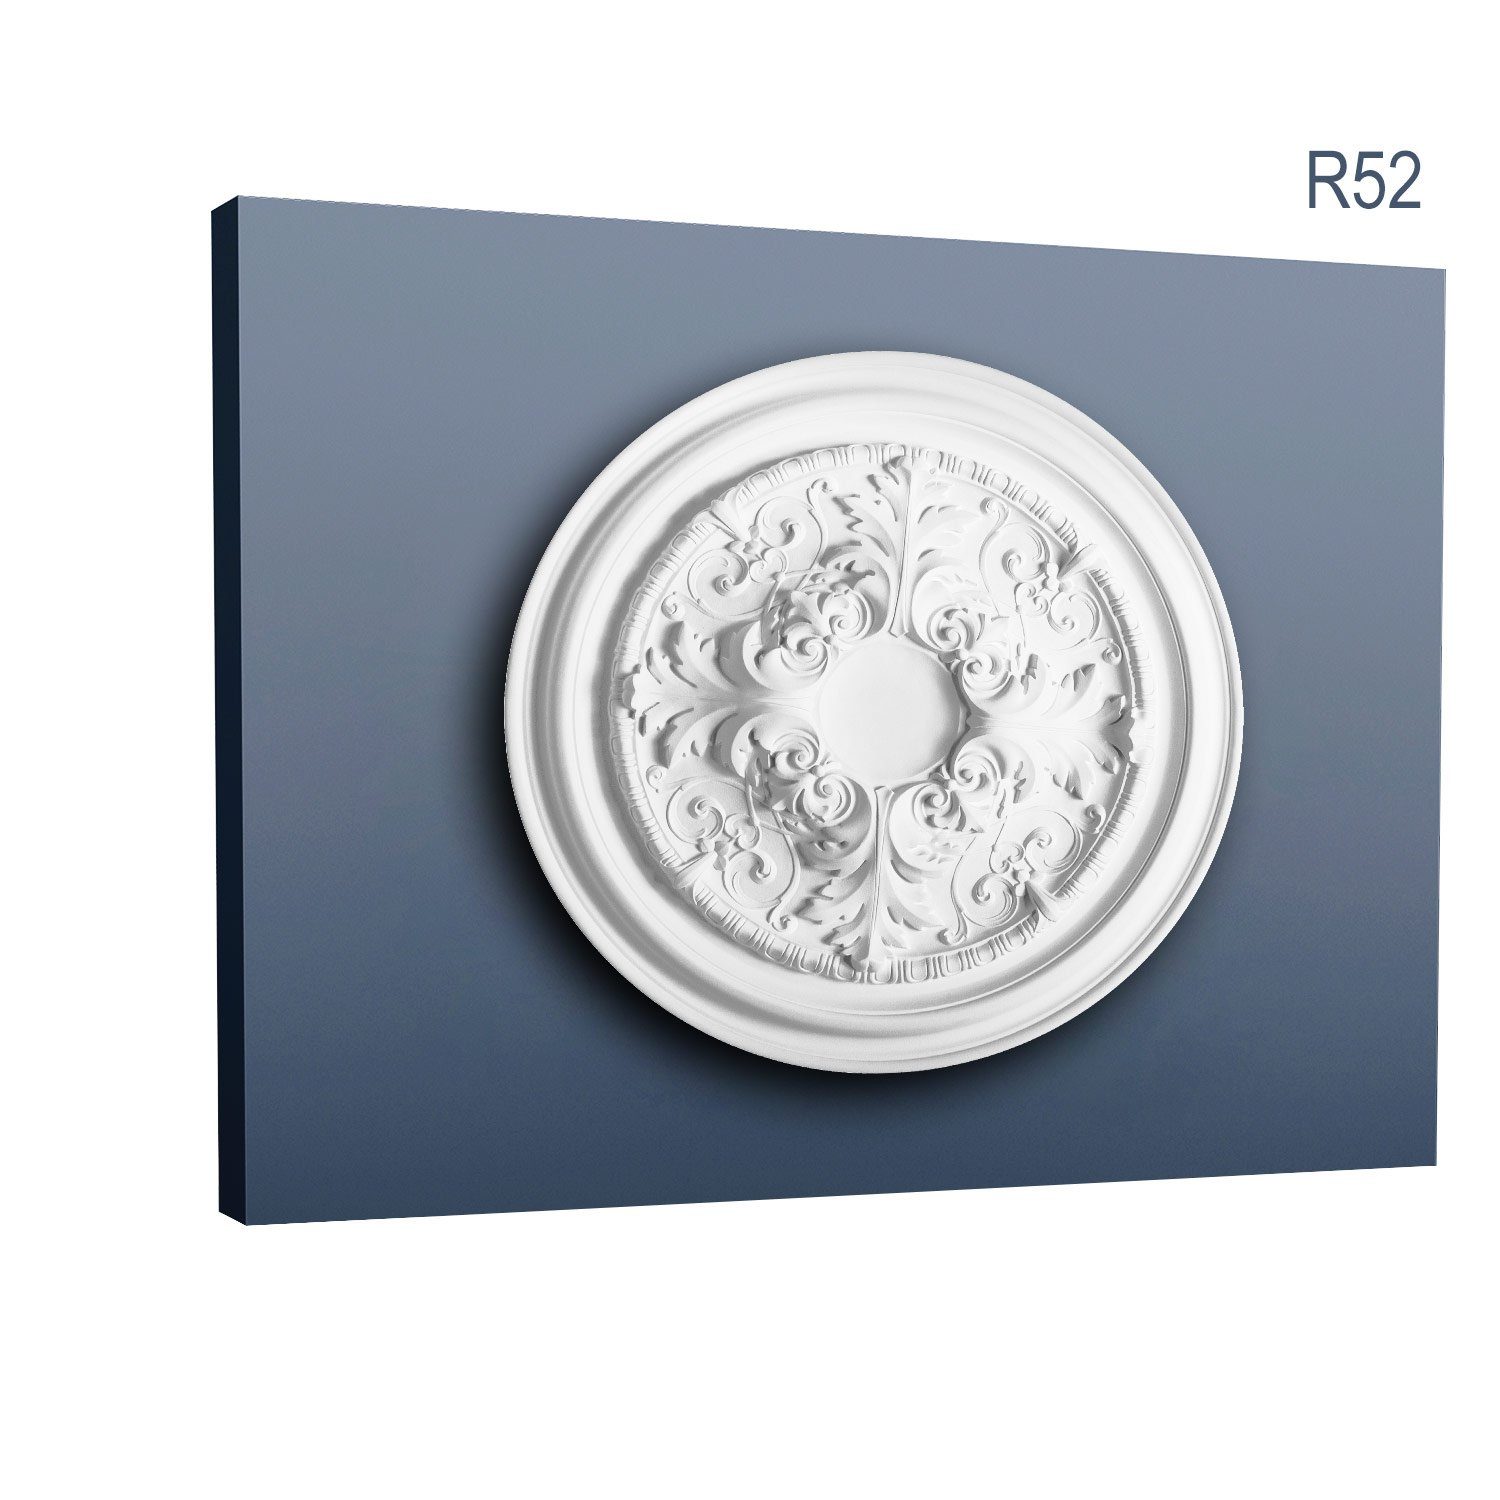 Orac Decor Decken-Rosette R52 (Rosette, 1 St., Deckenrosette, Medallion, Stuckrosette, Deckenelement, Zierelement, Durchmesser 69,5 cm), weiß, vorgrundiert, Stil: Rokoko / Barock